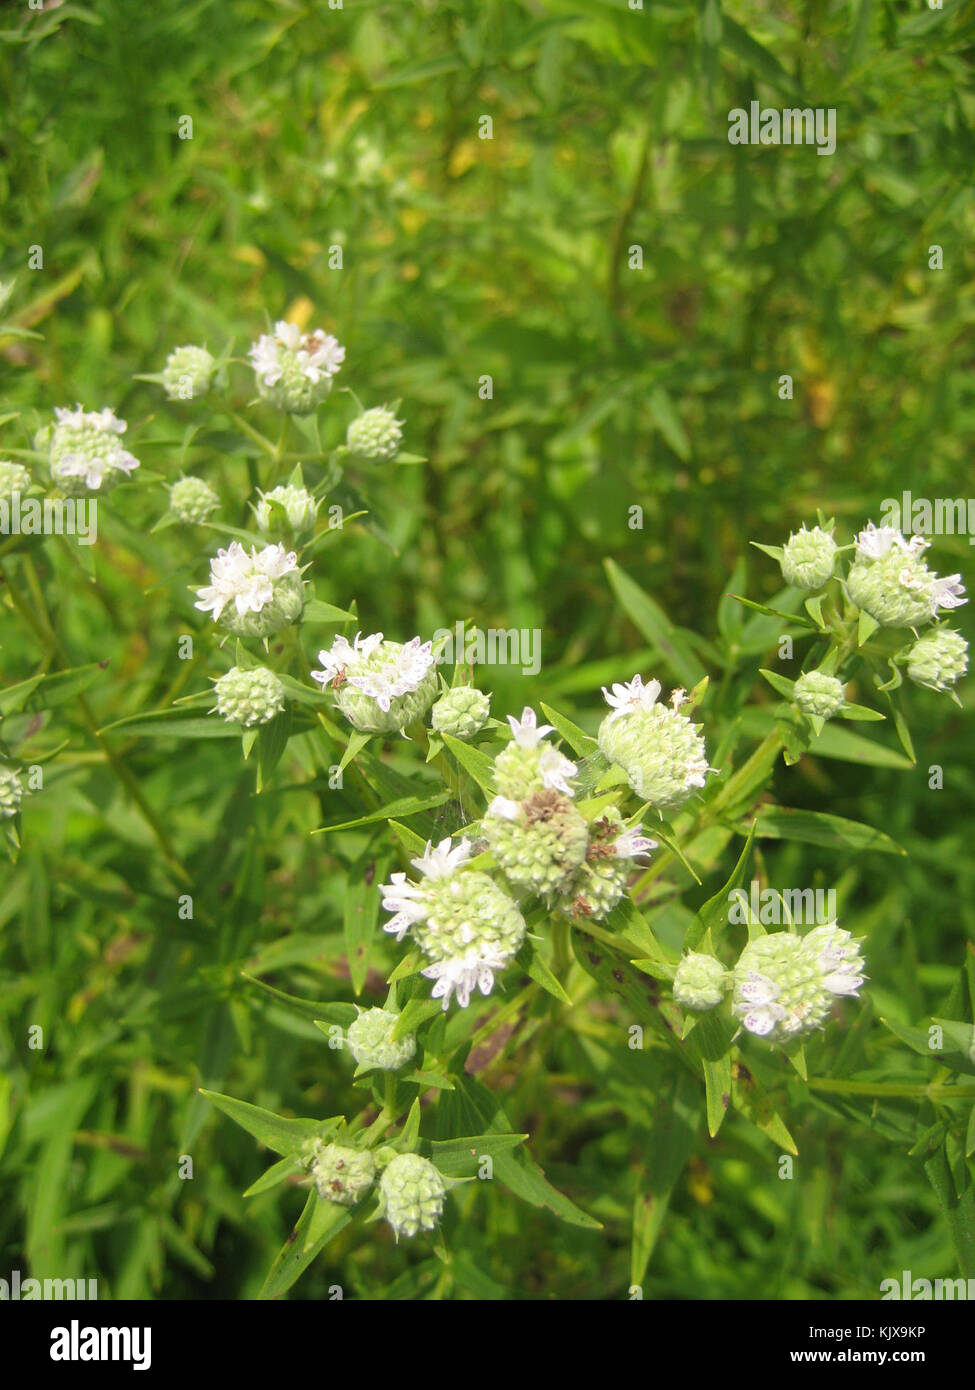 Pycnanthemum tenuifolium flowers Stock Photo